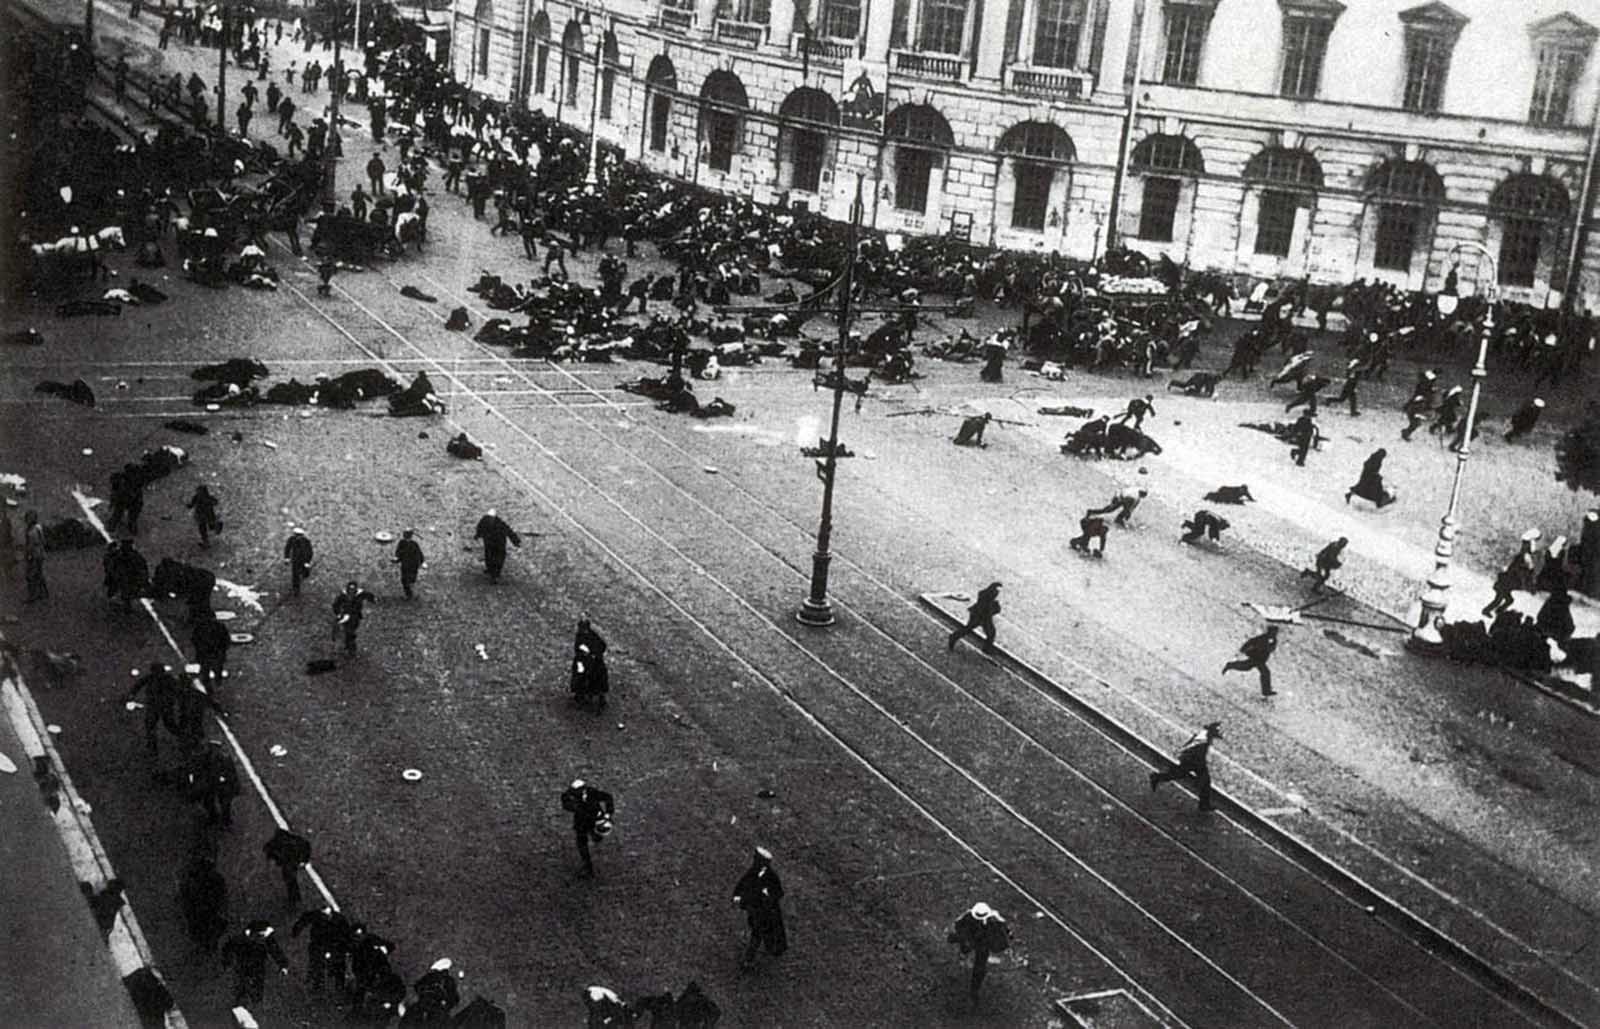 Les manifestants fuir après que la police du feu des mitrailleuses dans une foule lors de l'infâme Jours de juillet en Russie, en 1917